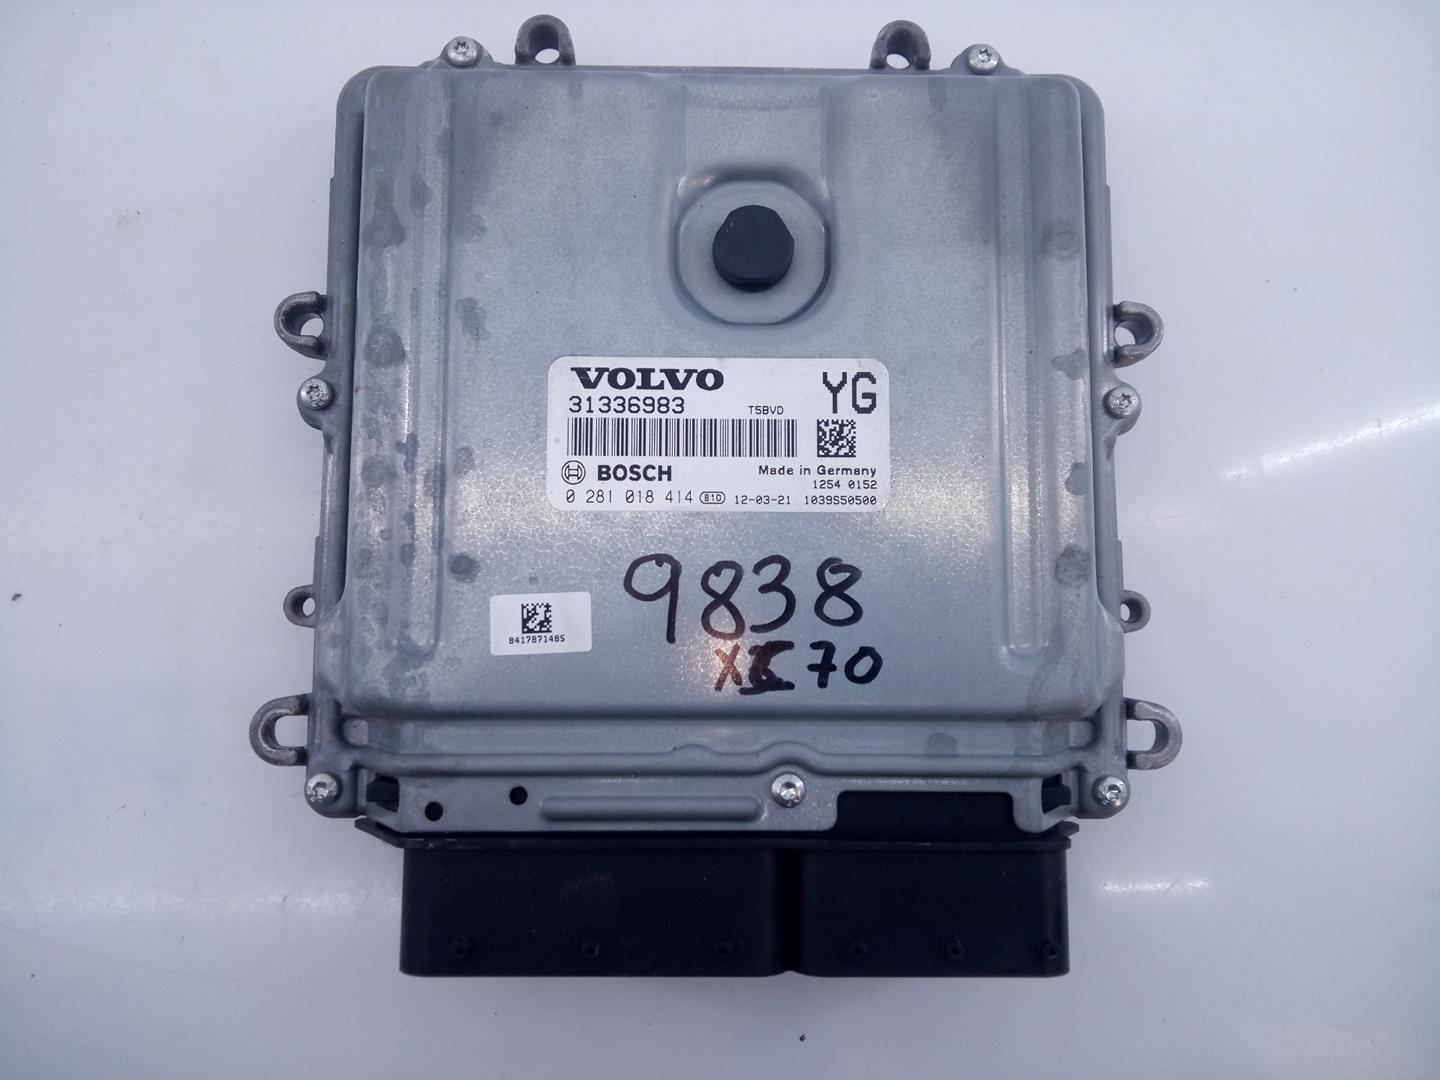 VOLVO XC70 3 generation (2007-2020) Блок управления двигателем 31336983, 0281018414, E3-B5-18-3 24057744